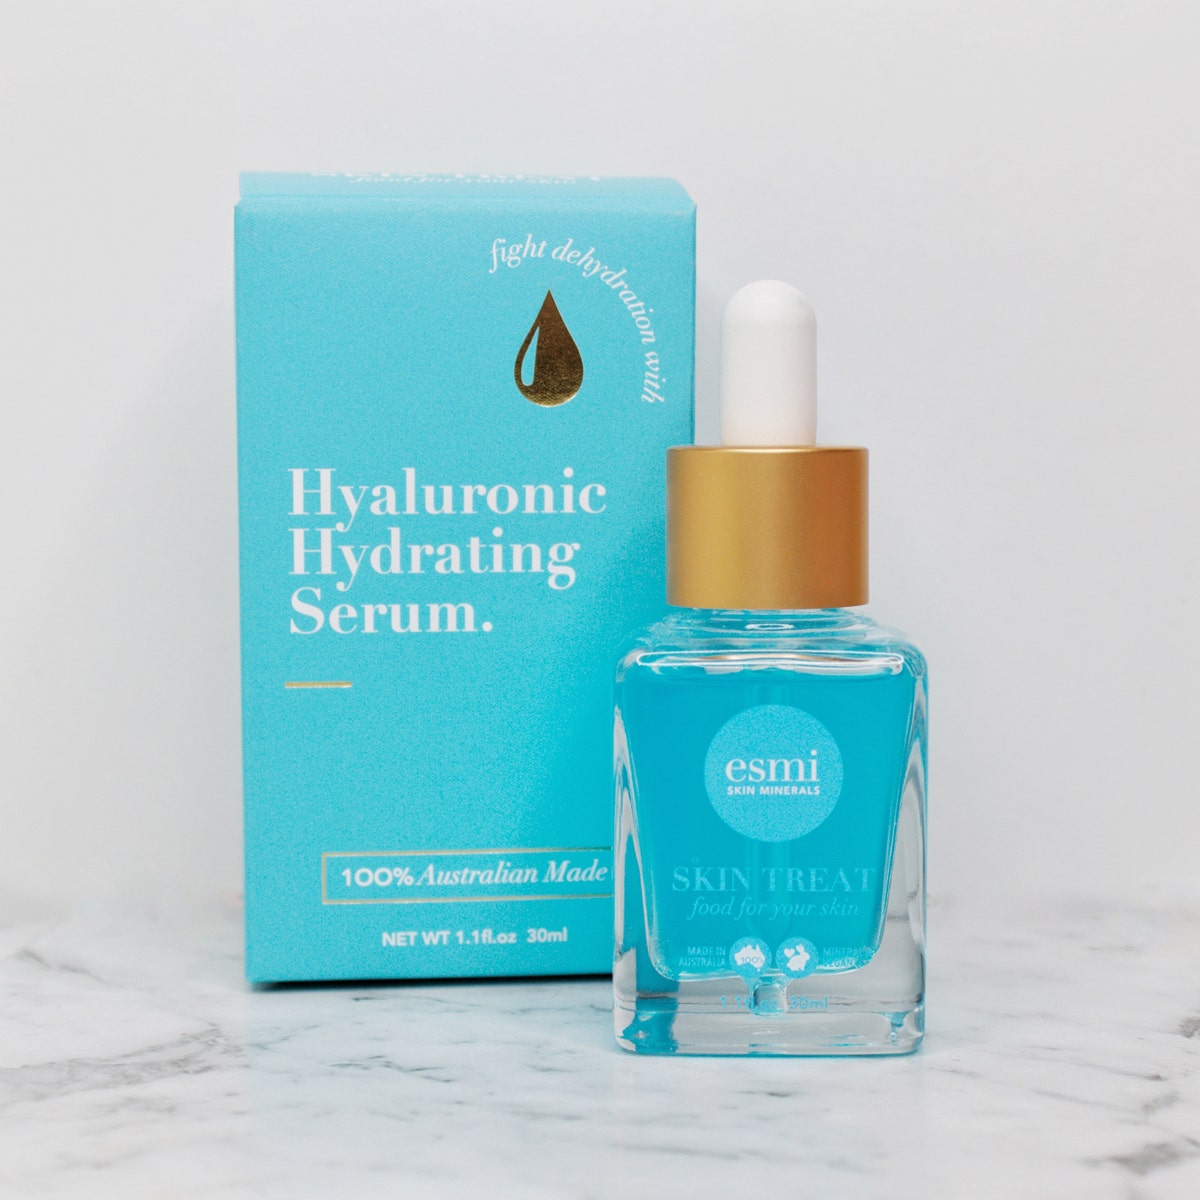 esmi Hyaluronic Hydrating Serum with luxury packaging